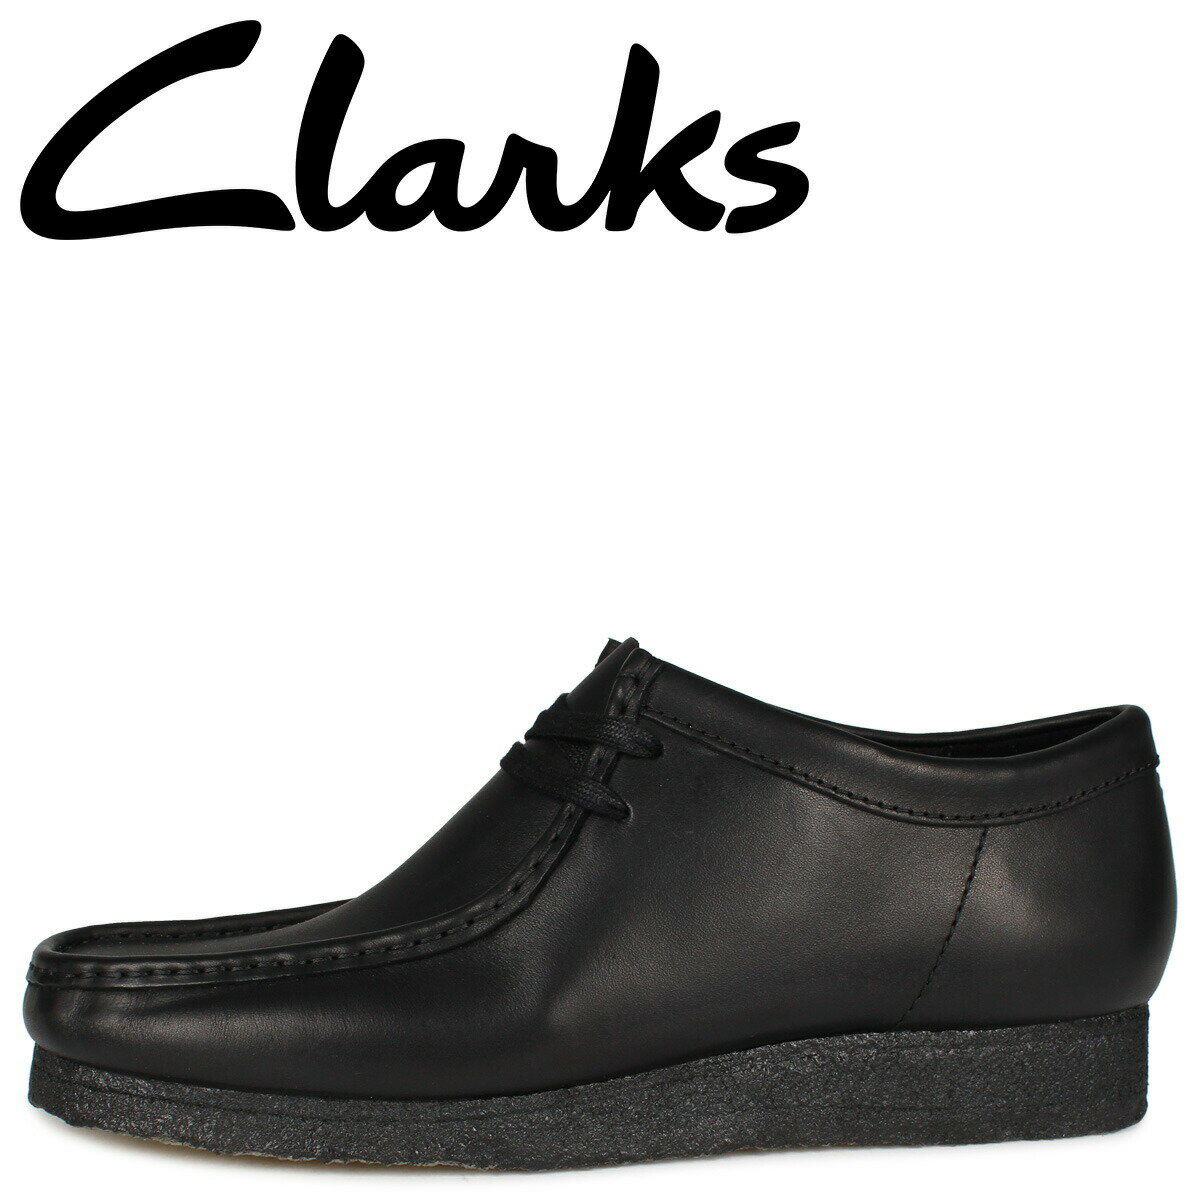 Clarks WALLABEE BOOT クラークス ワラビー ブーツ メンズ ブラック 黒 26155514